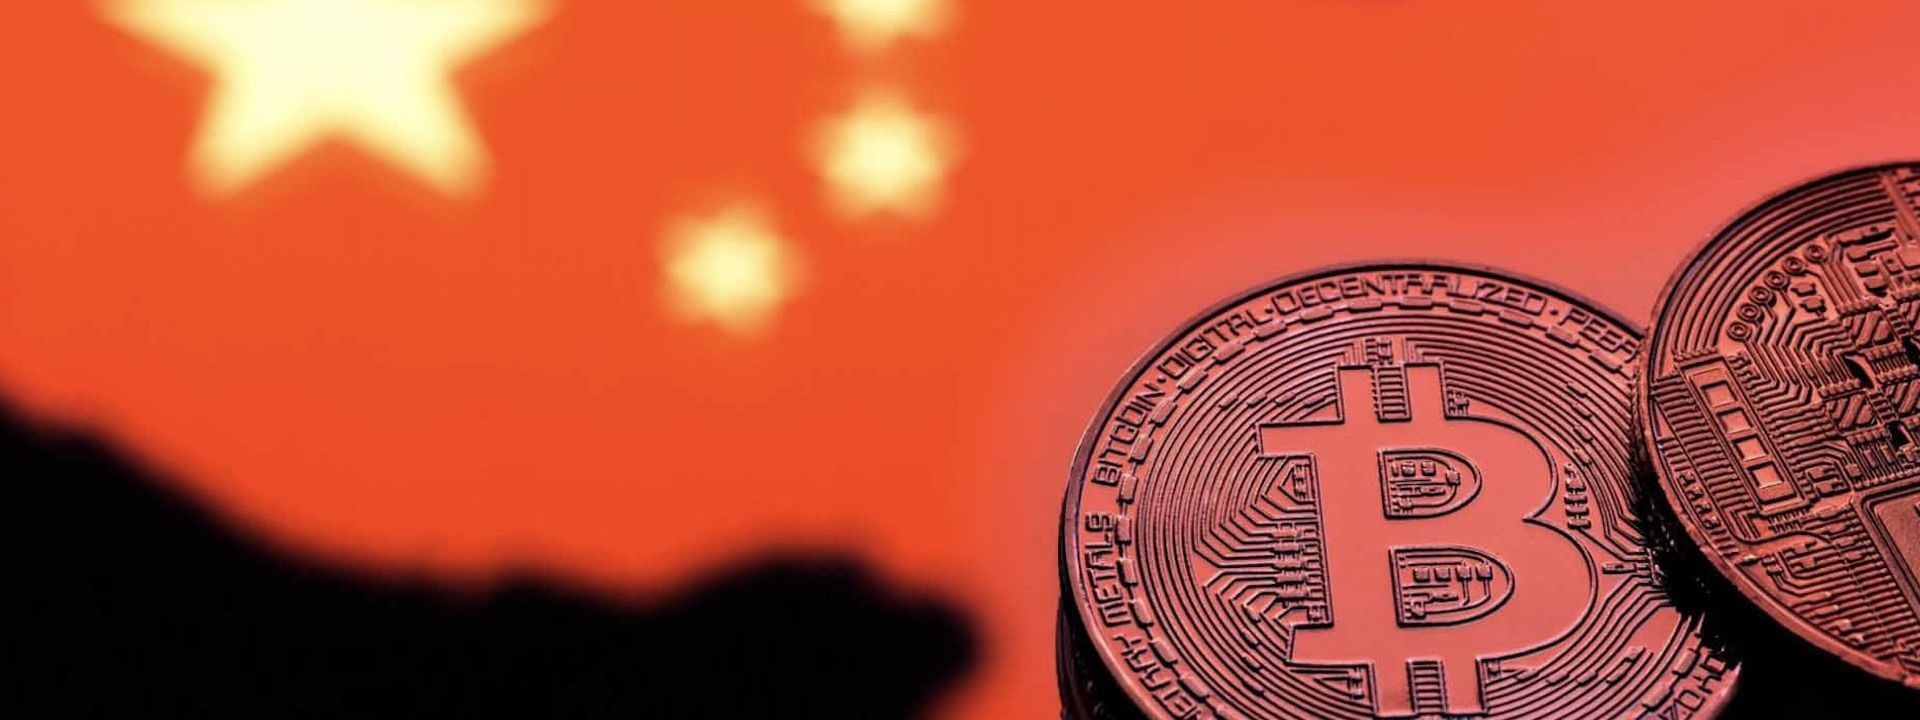 Trung Quốc xếp EOS hạng 1, Bitcoin hạng 17 trong bảng xếp hạng crypto quốc gia